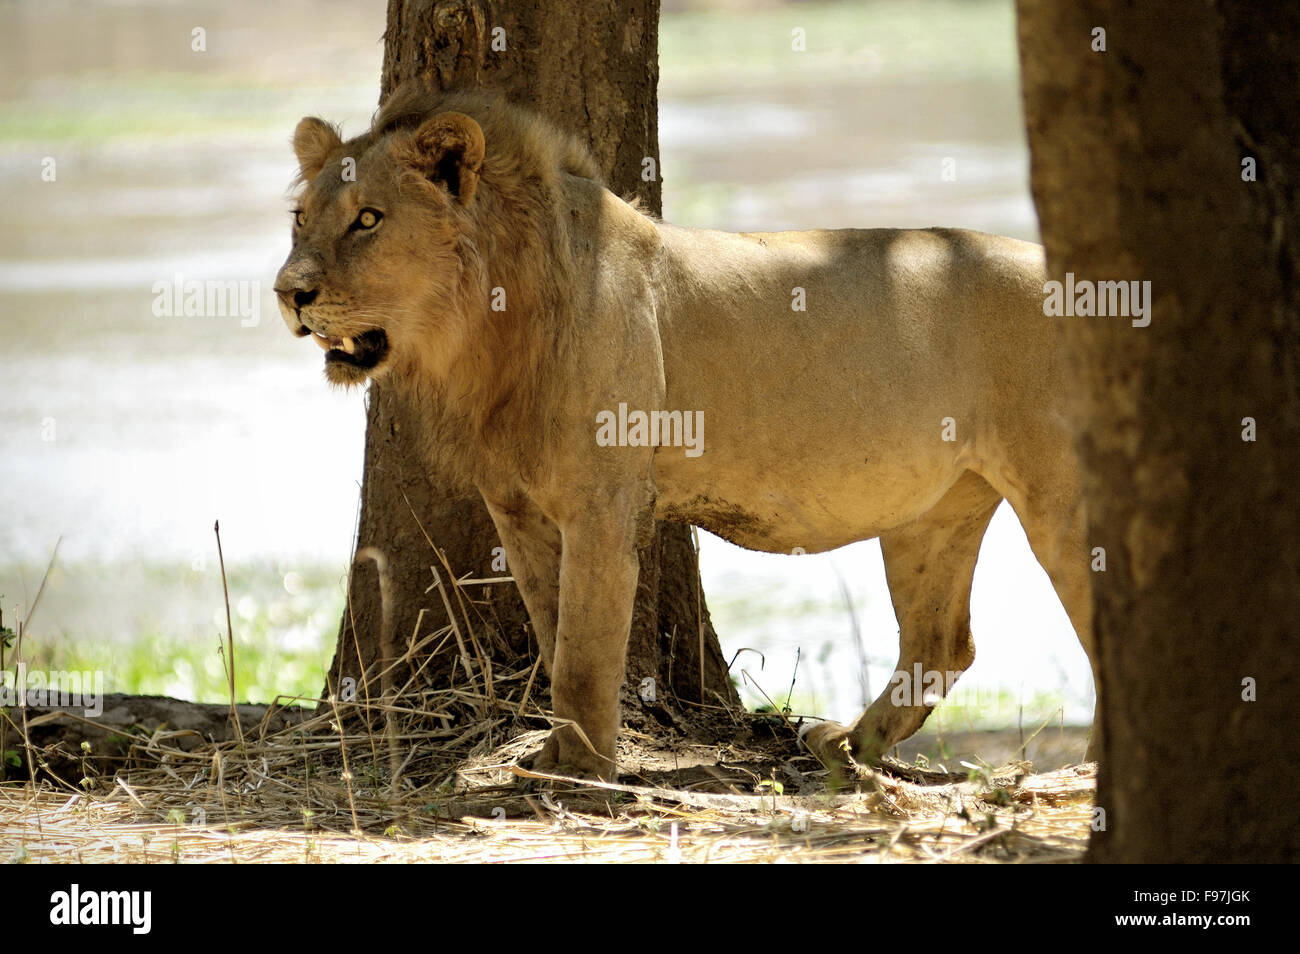 Young male lion (Panthera leo) Comité permanent entre deux arbres dans le Lower Zambezi National Park, Zambie Banque D'Images